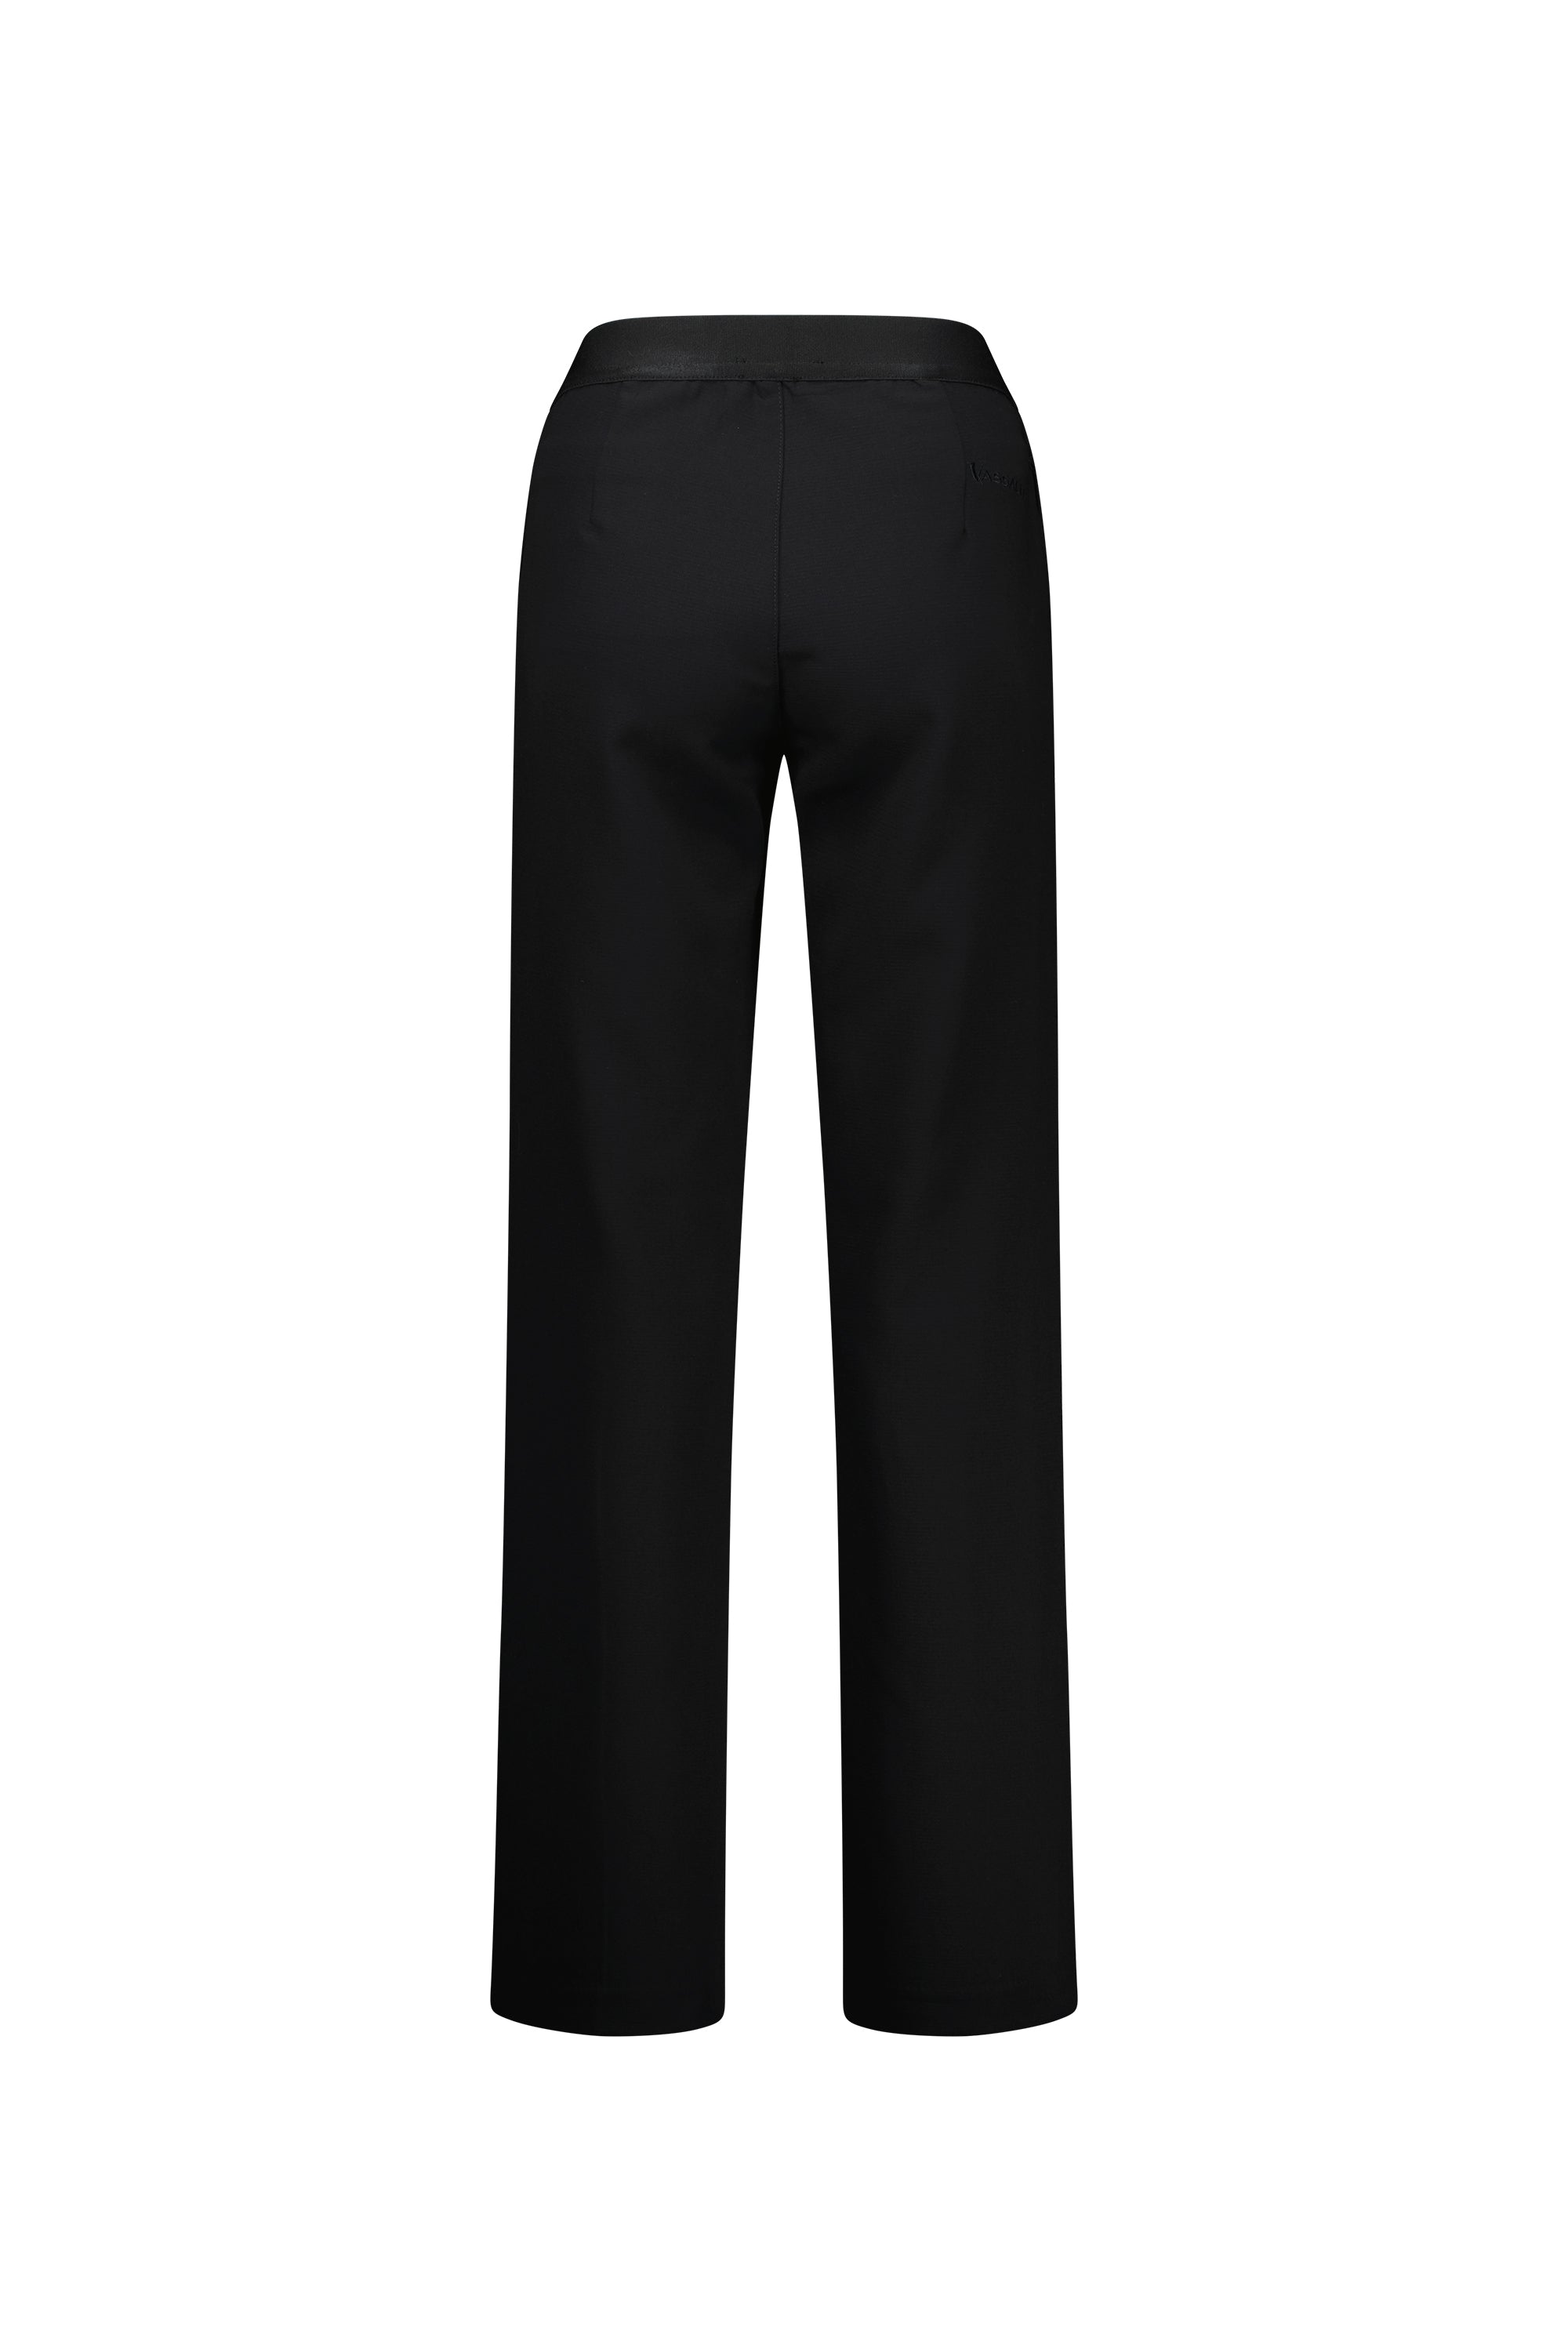 Vassalli Wide Leg Full Length Dress Pant - Black